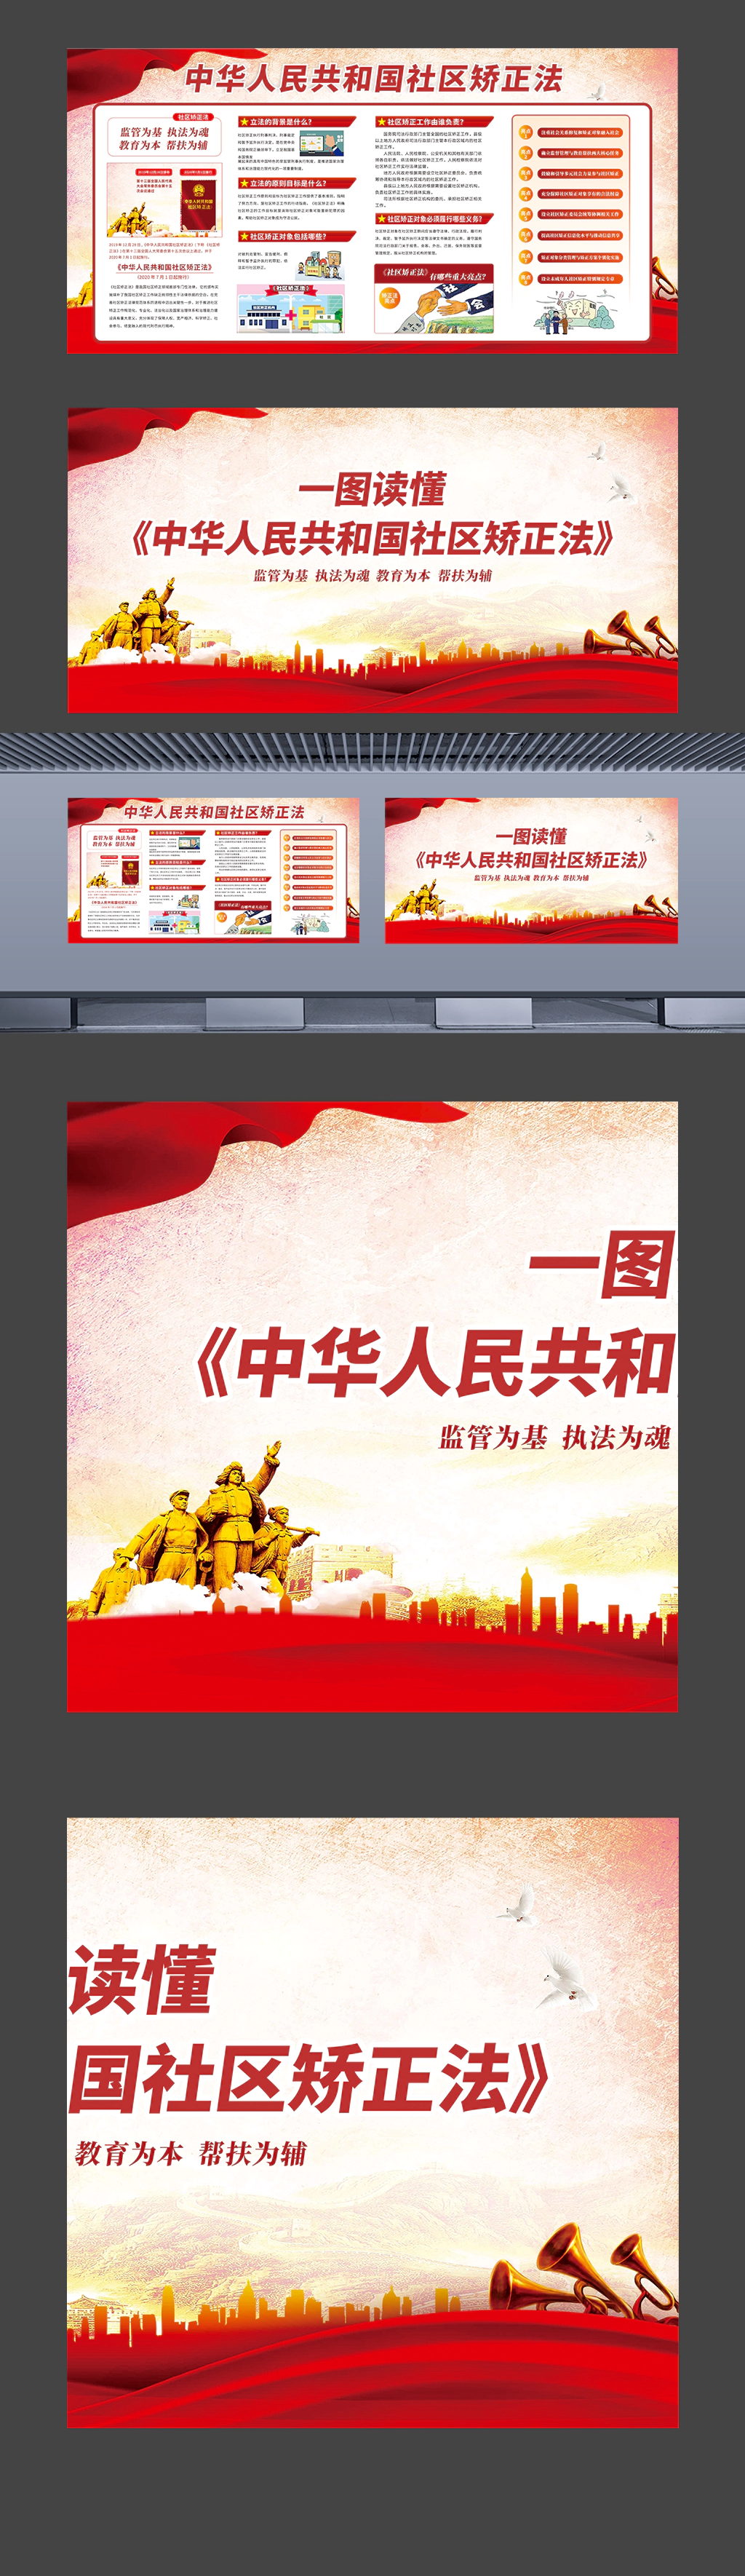 一图读懂中华人民共和国社区矫正法普法宣传展板